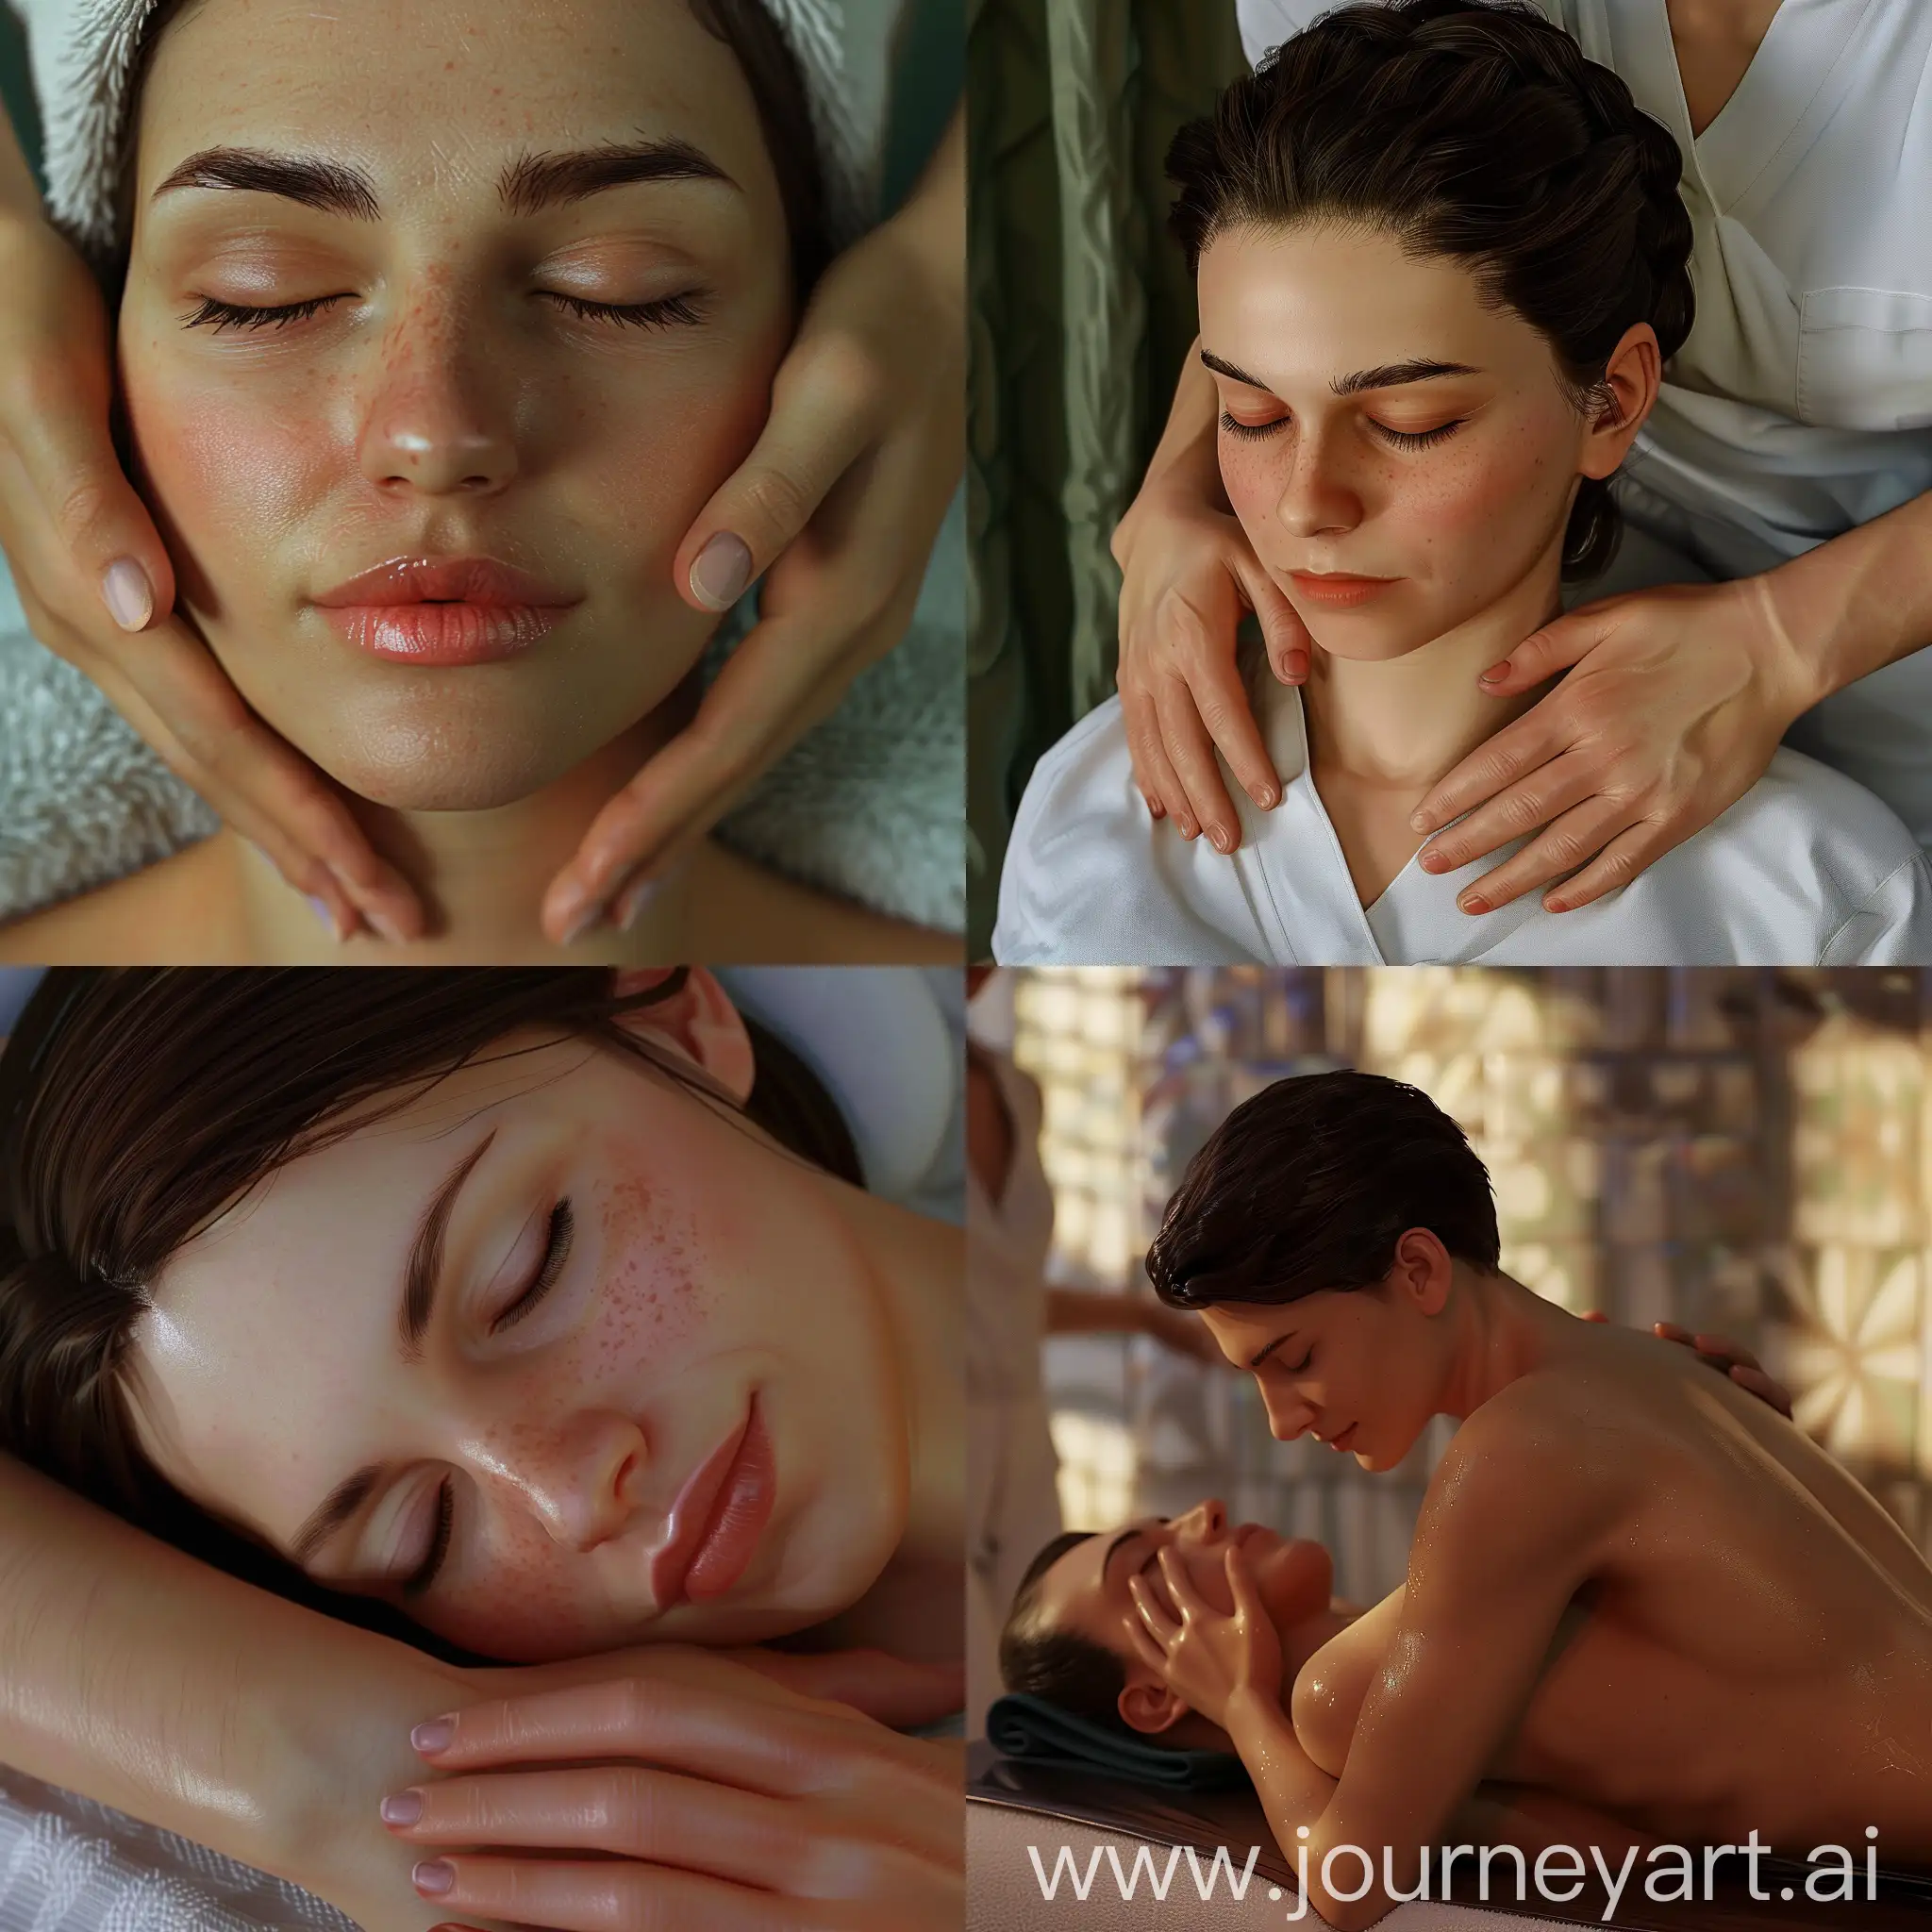 Massage therapist super realistic